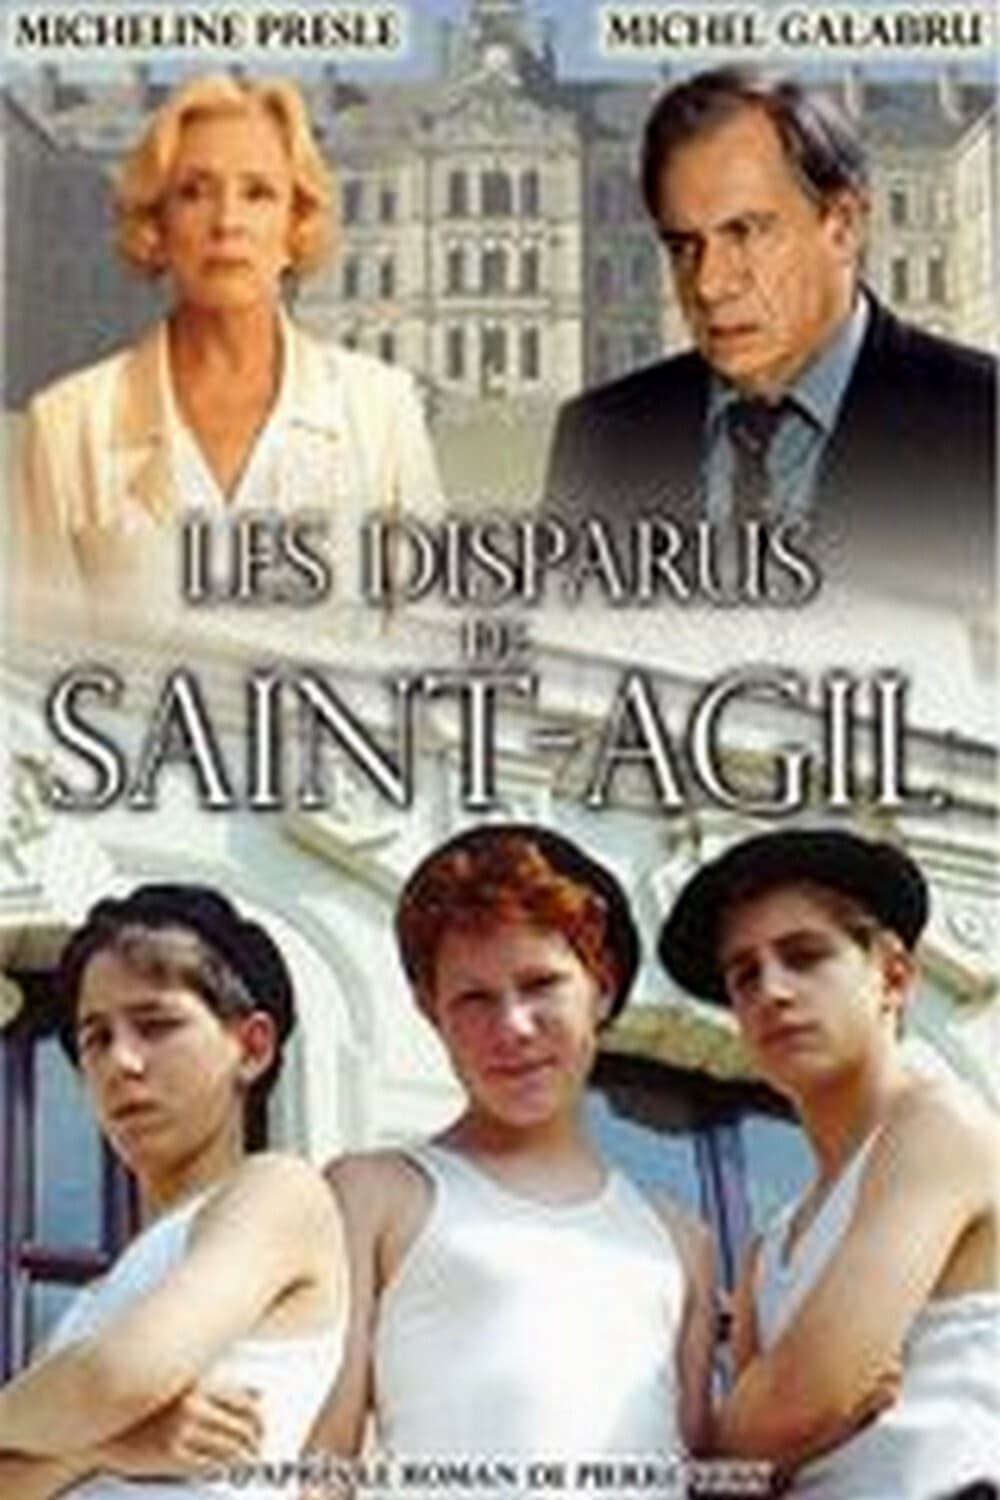 Les Disparus de Saint-Agil